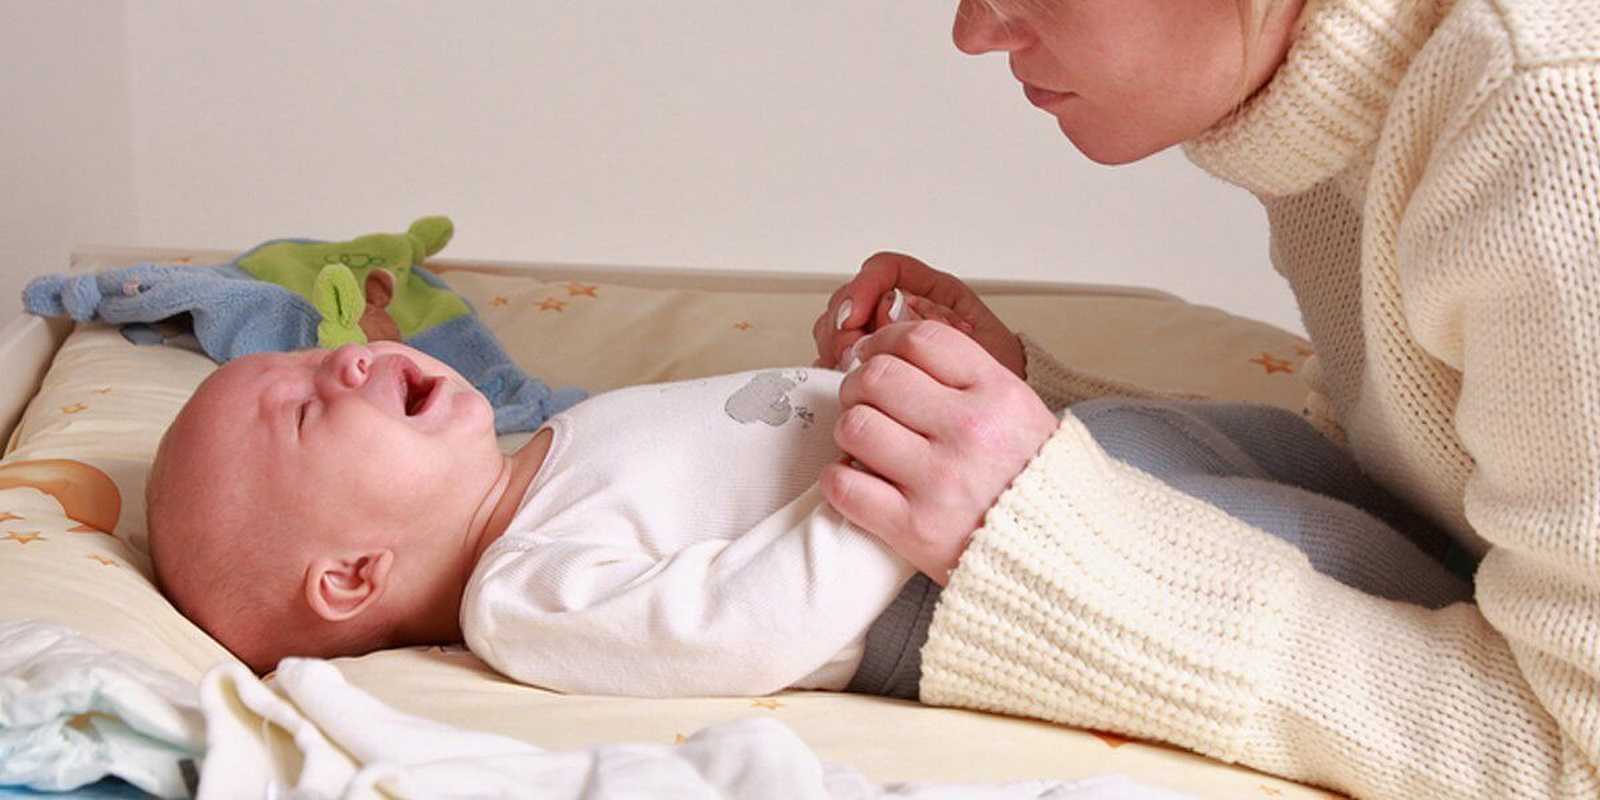 Болит живот у новорожденного - признаки, причины, что делать – как помочь малышу? причины болей в животе у новорождённого - автор екатерина данилова - журнал женское мнение